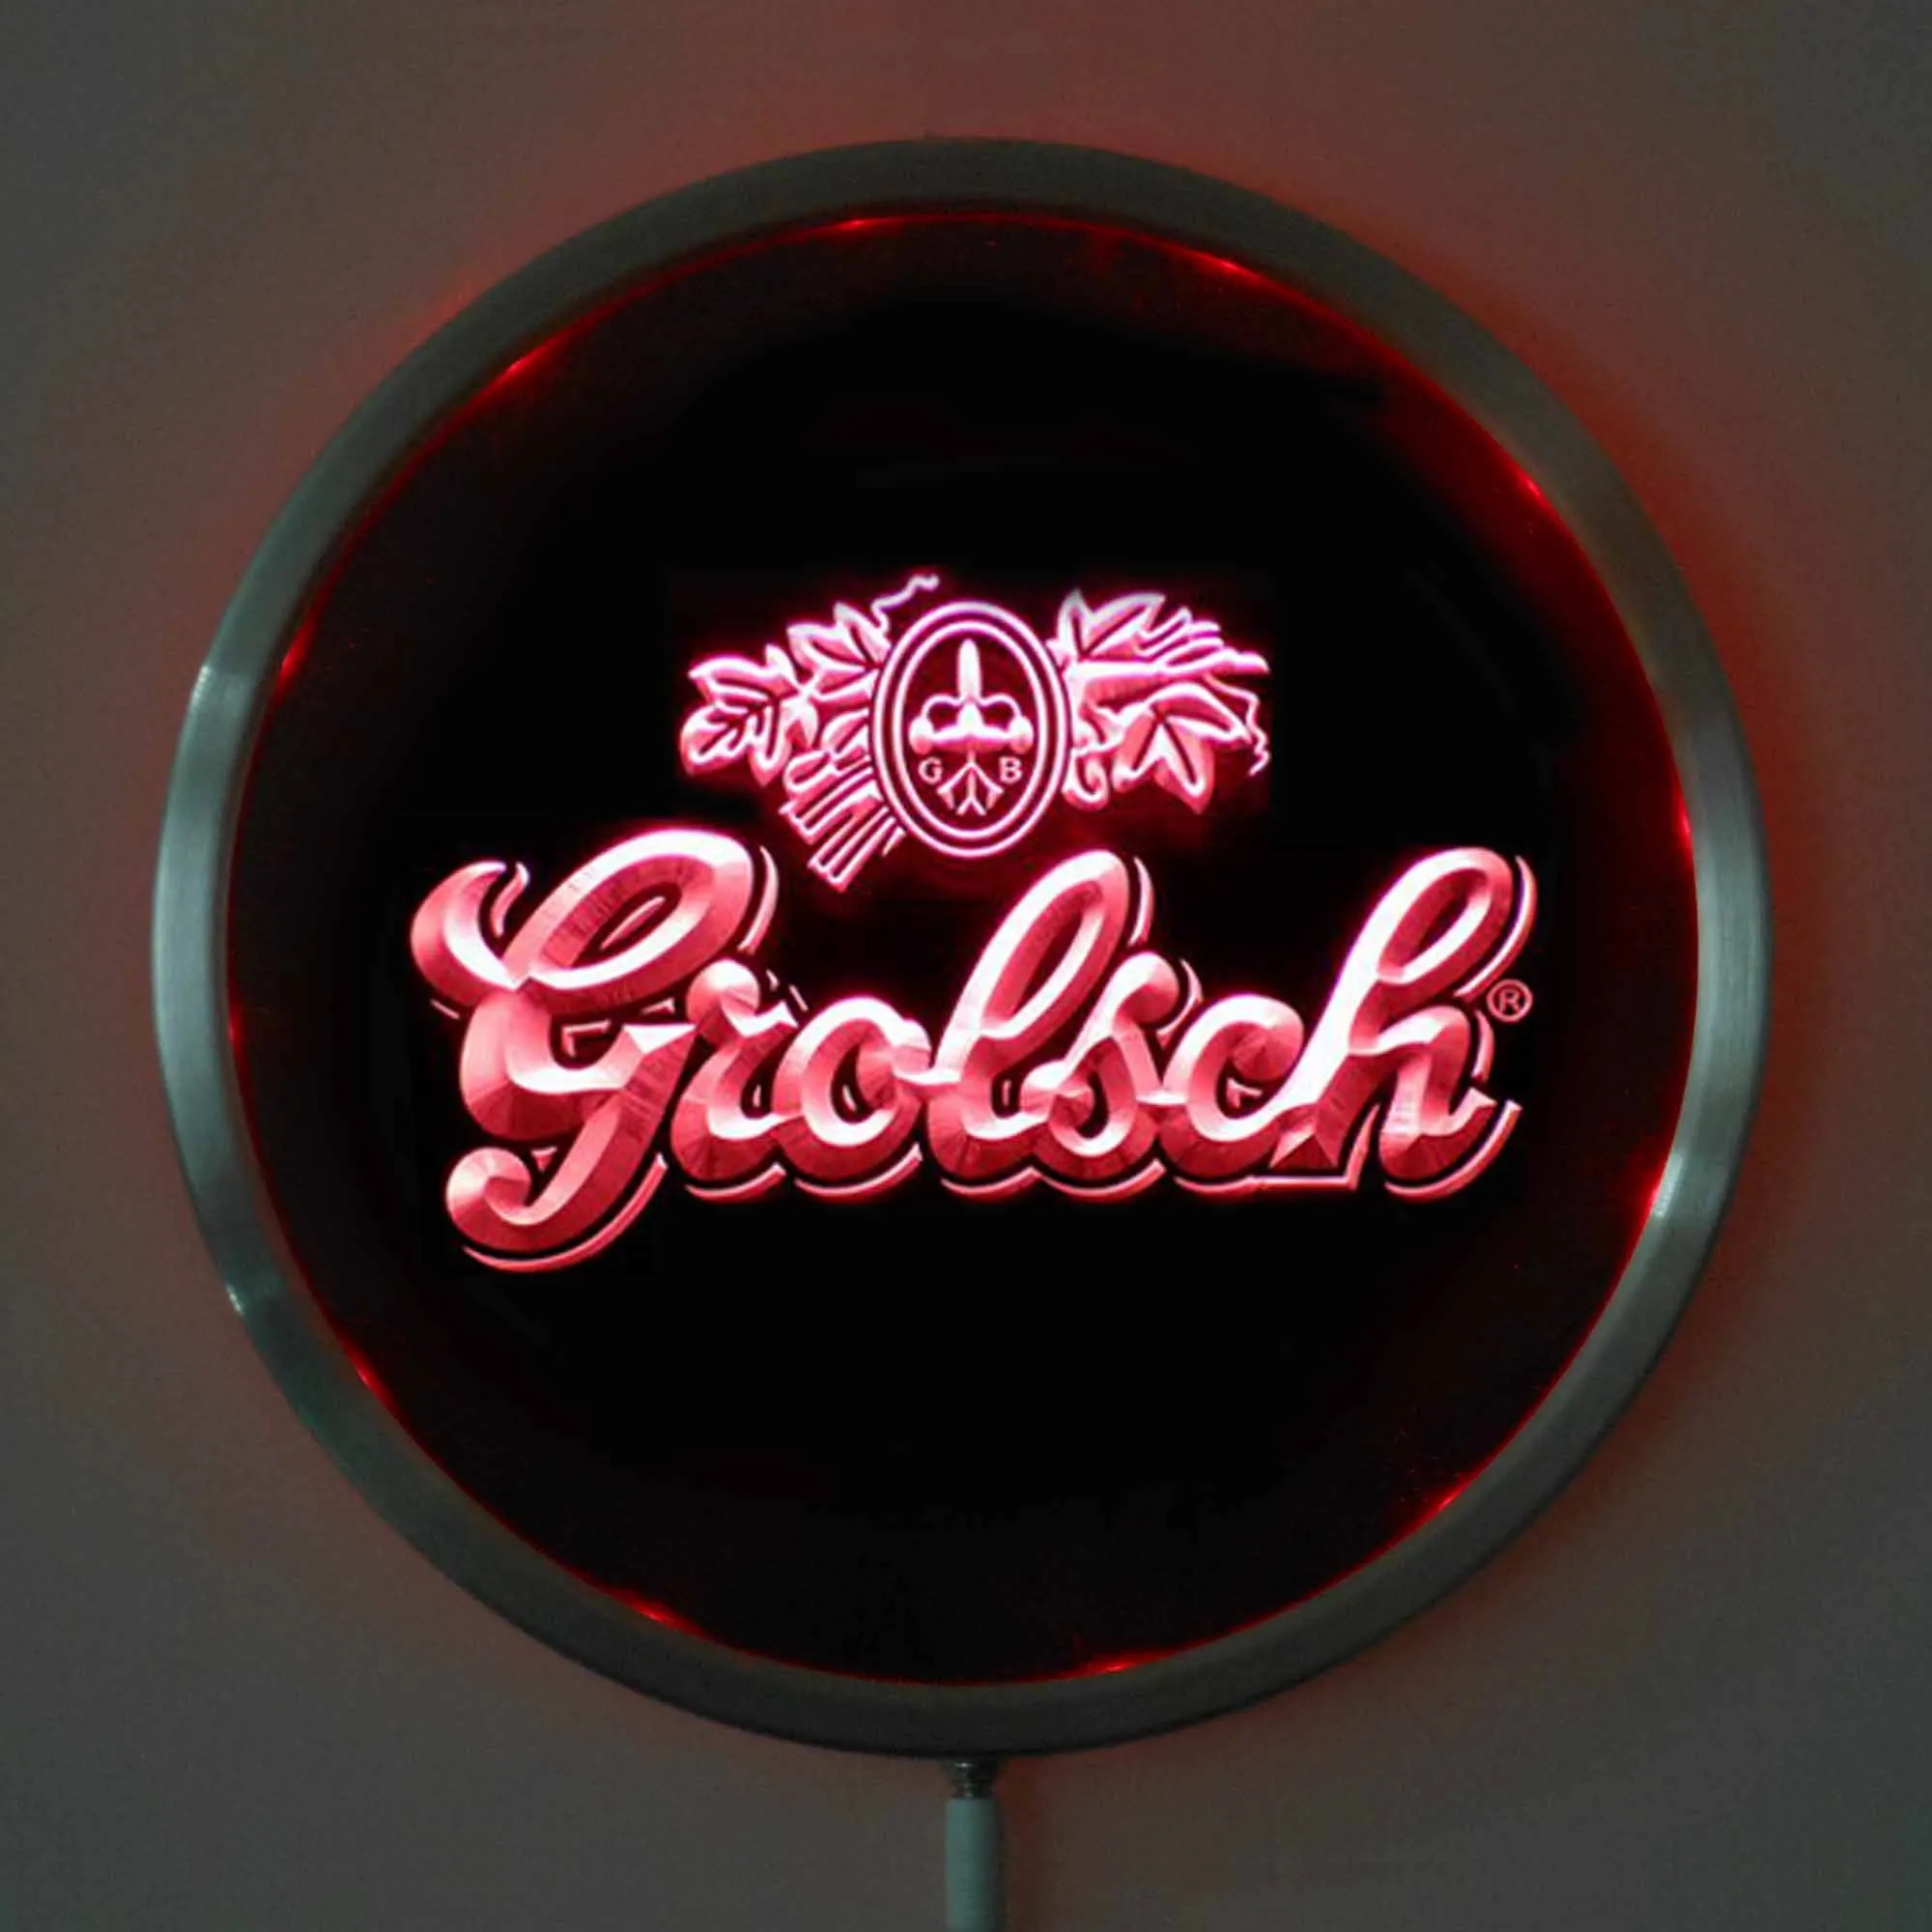 Rs-0007 Grolsch пивной светодиодный неоновый свет круглые вывески 25 см/10 дюймов-знаки бар с RGB многоцветной функцией дистанционного беспроводного управления